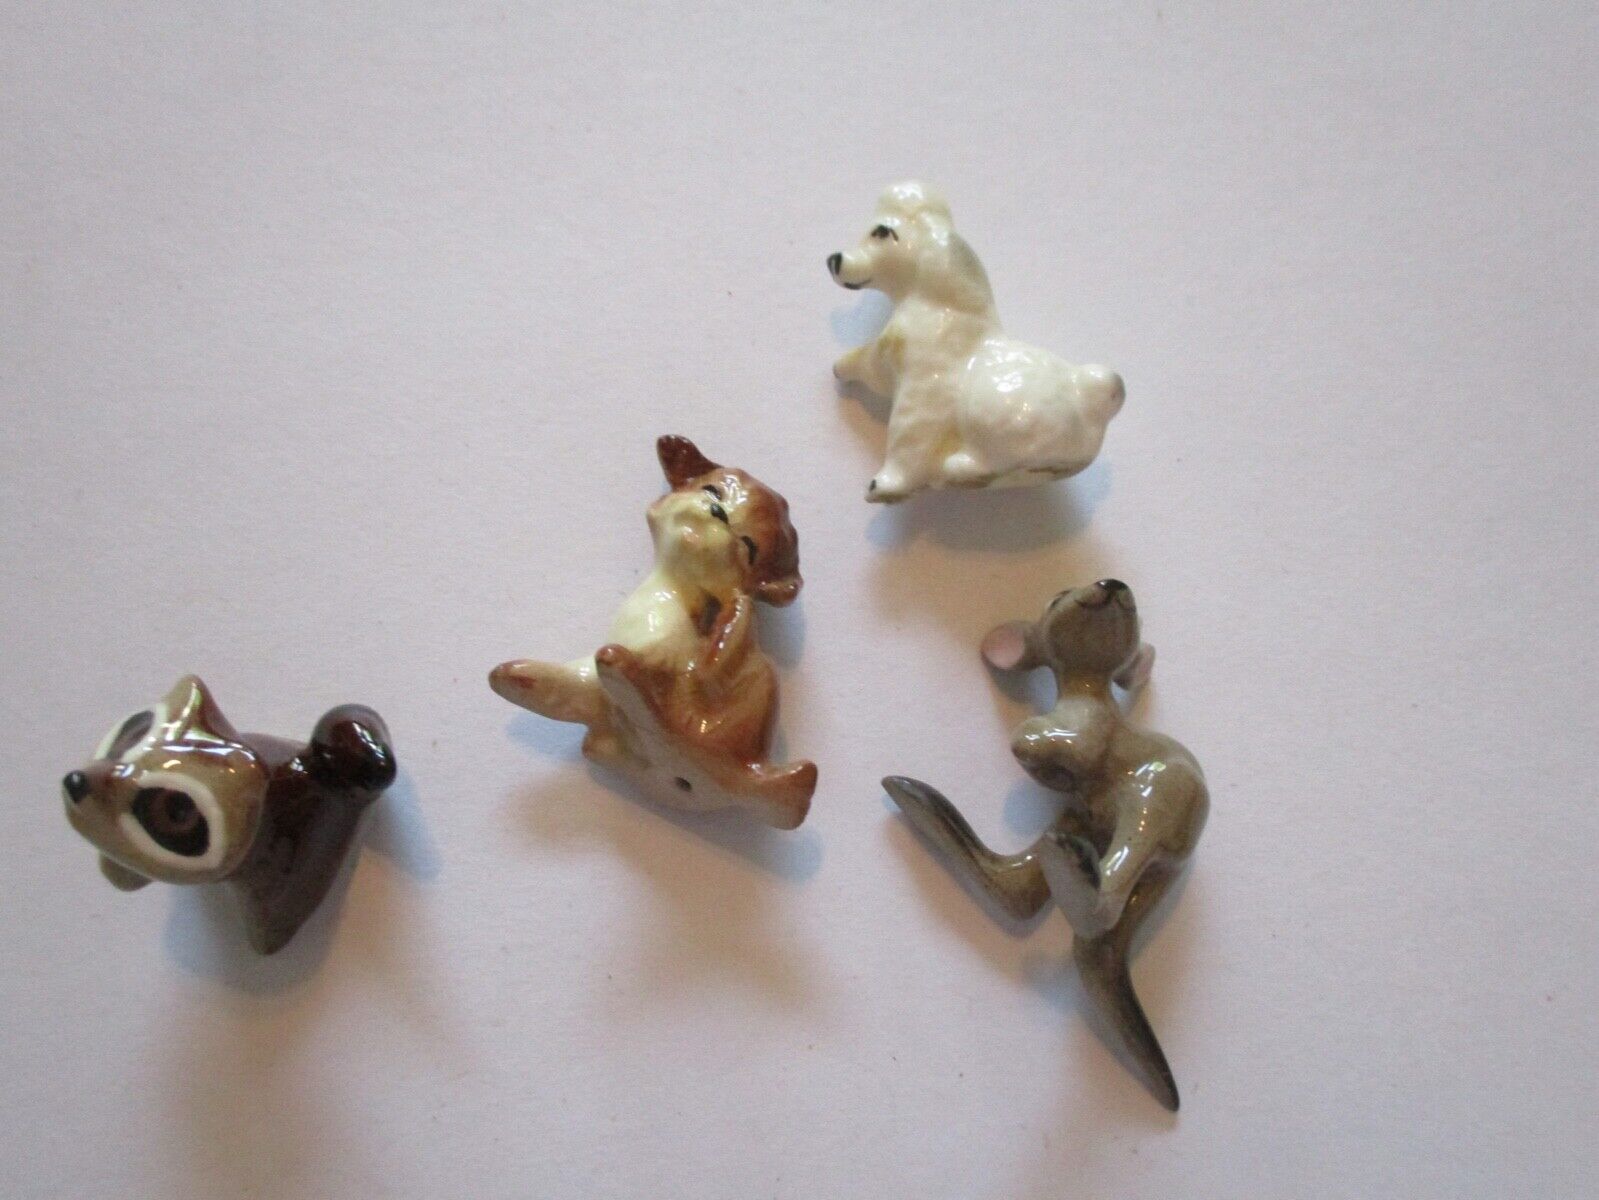 Lot of (4) Hagen Renaker Miniatures